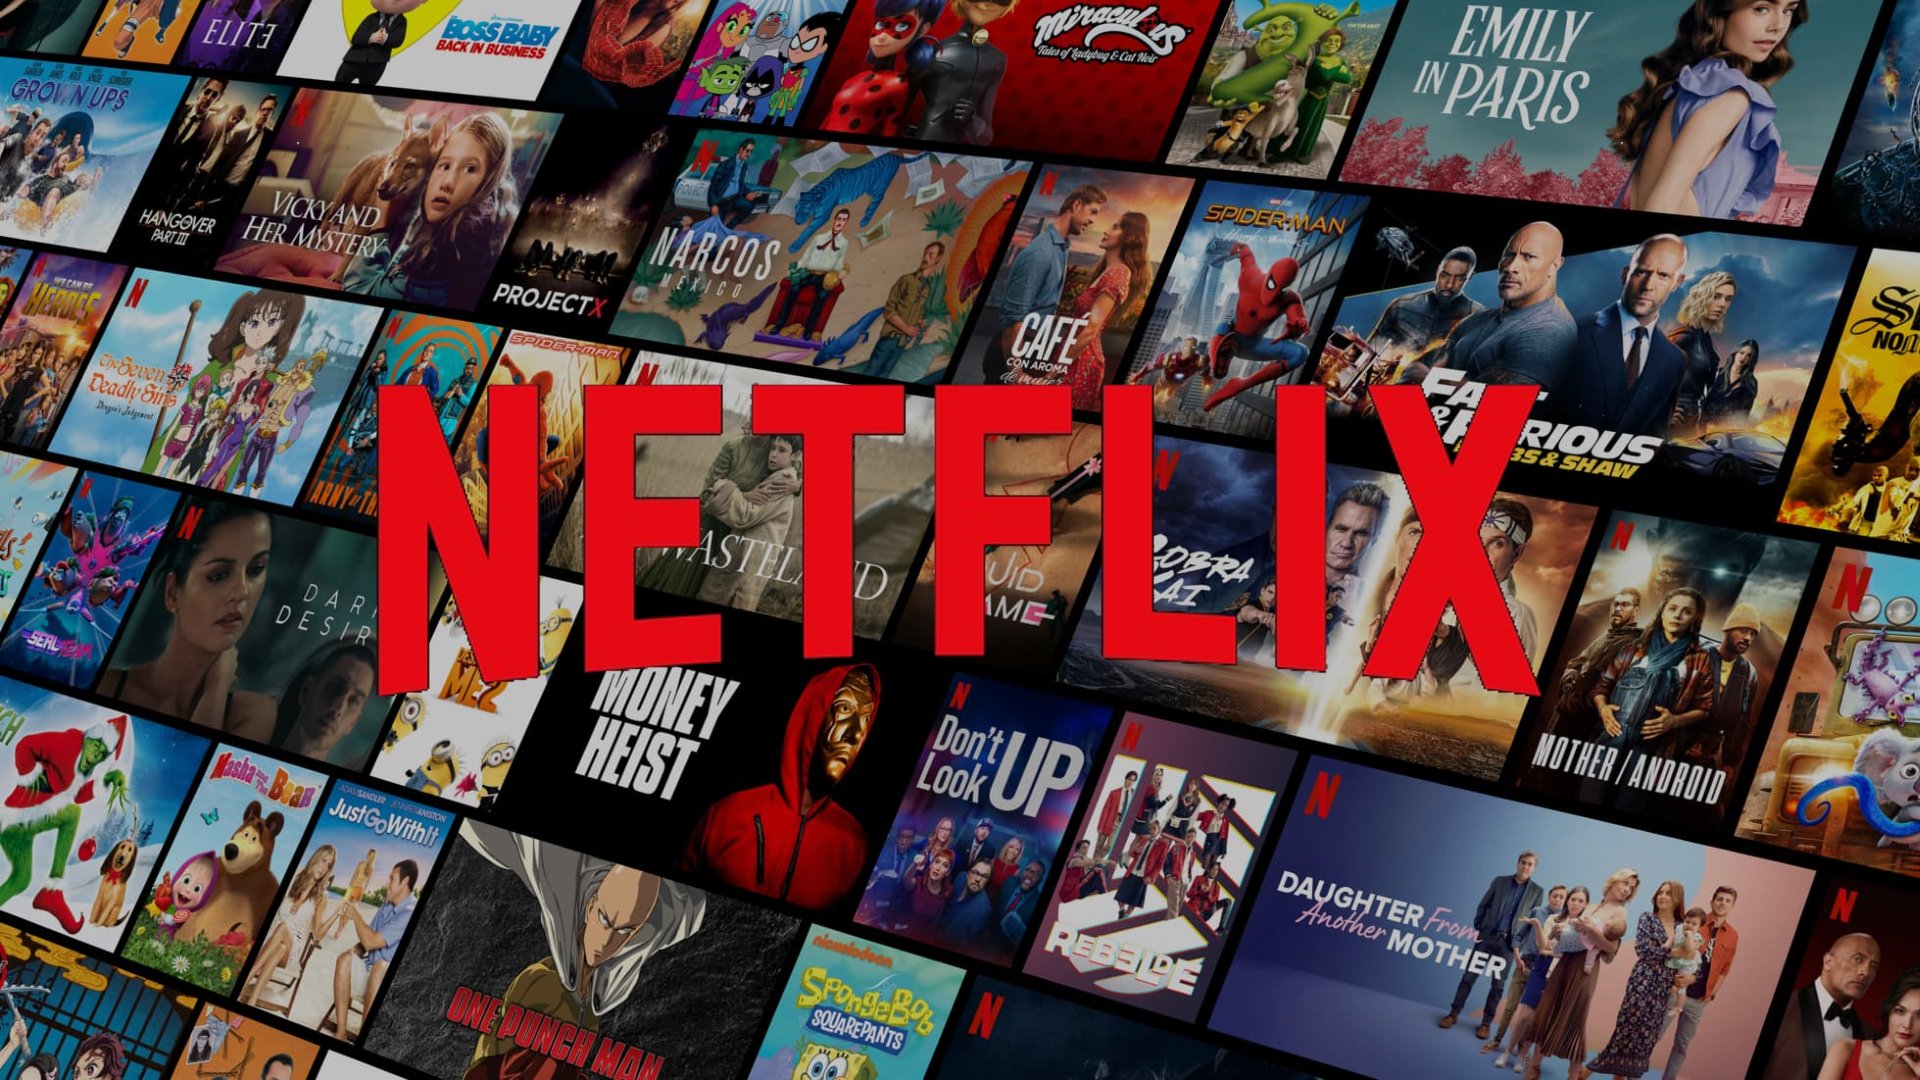 Netflix Codes: find hidden categories on Netflix (full list)